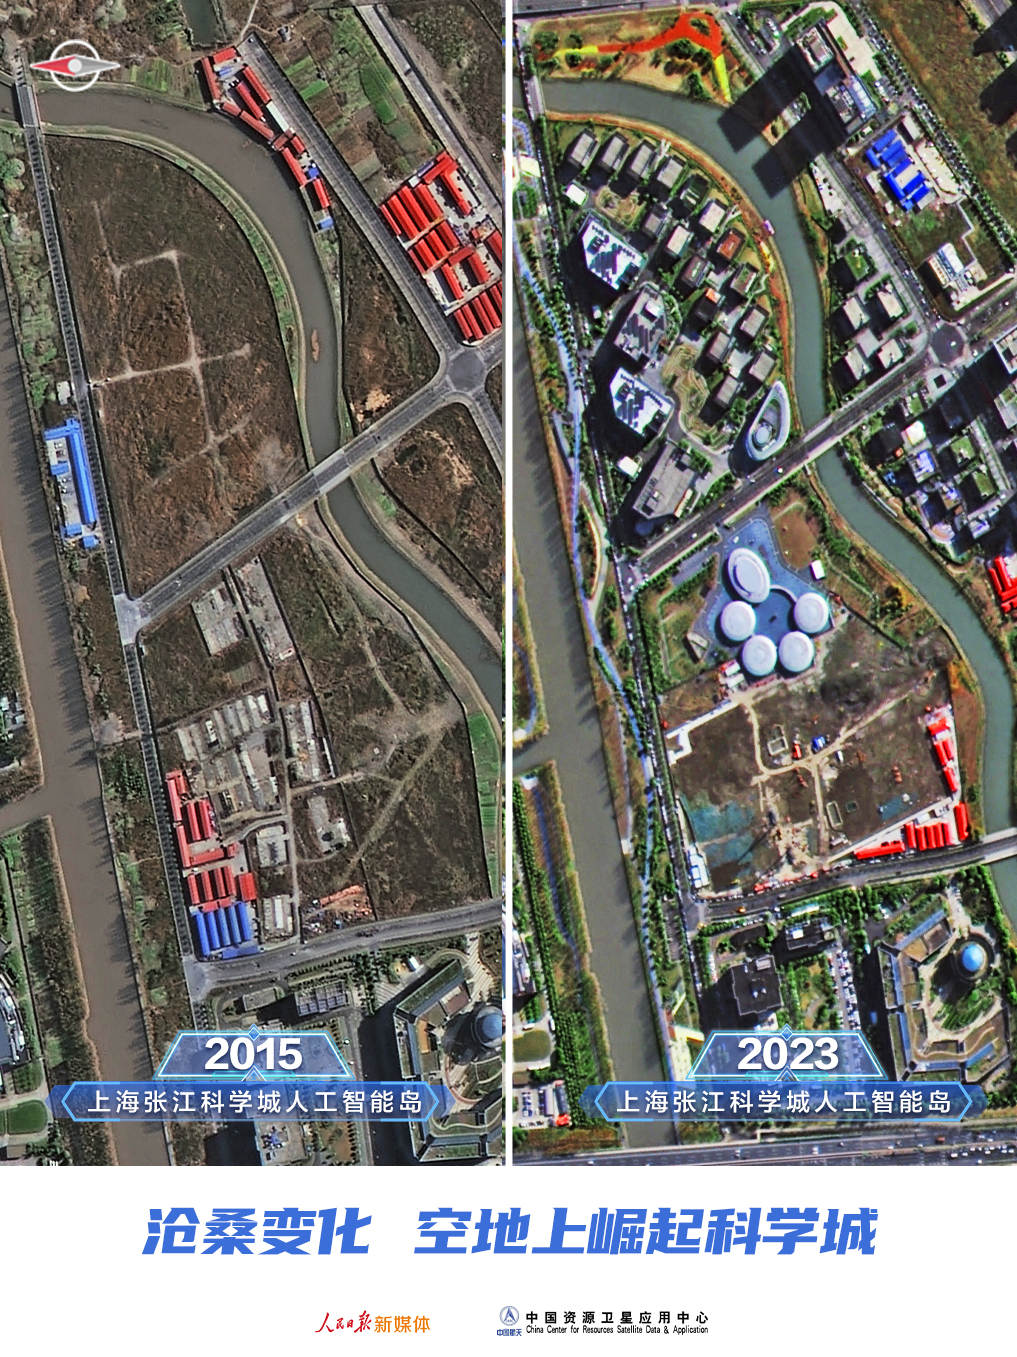 卫星图对比：这些年我们努力建设的家，现在怎么样了